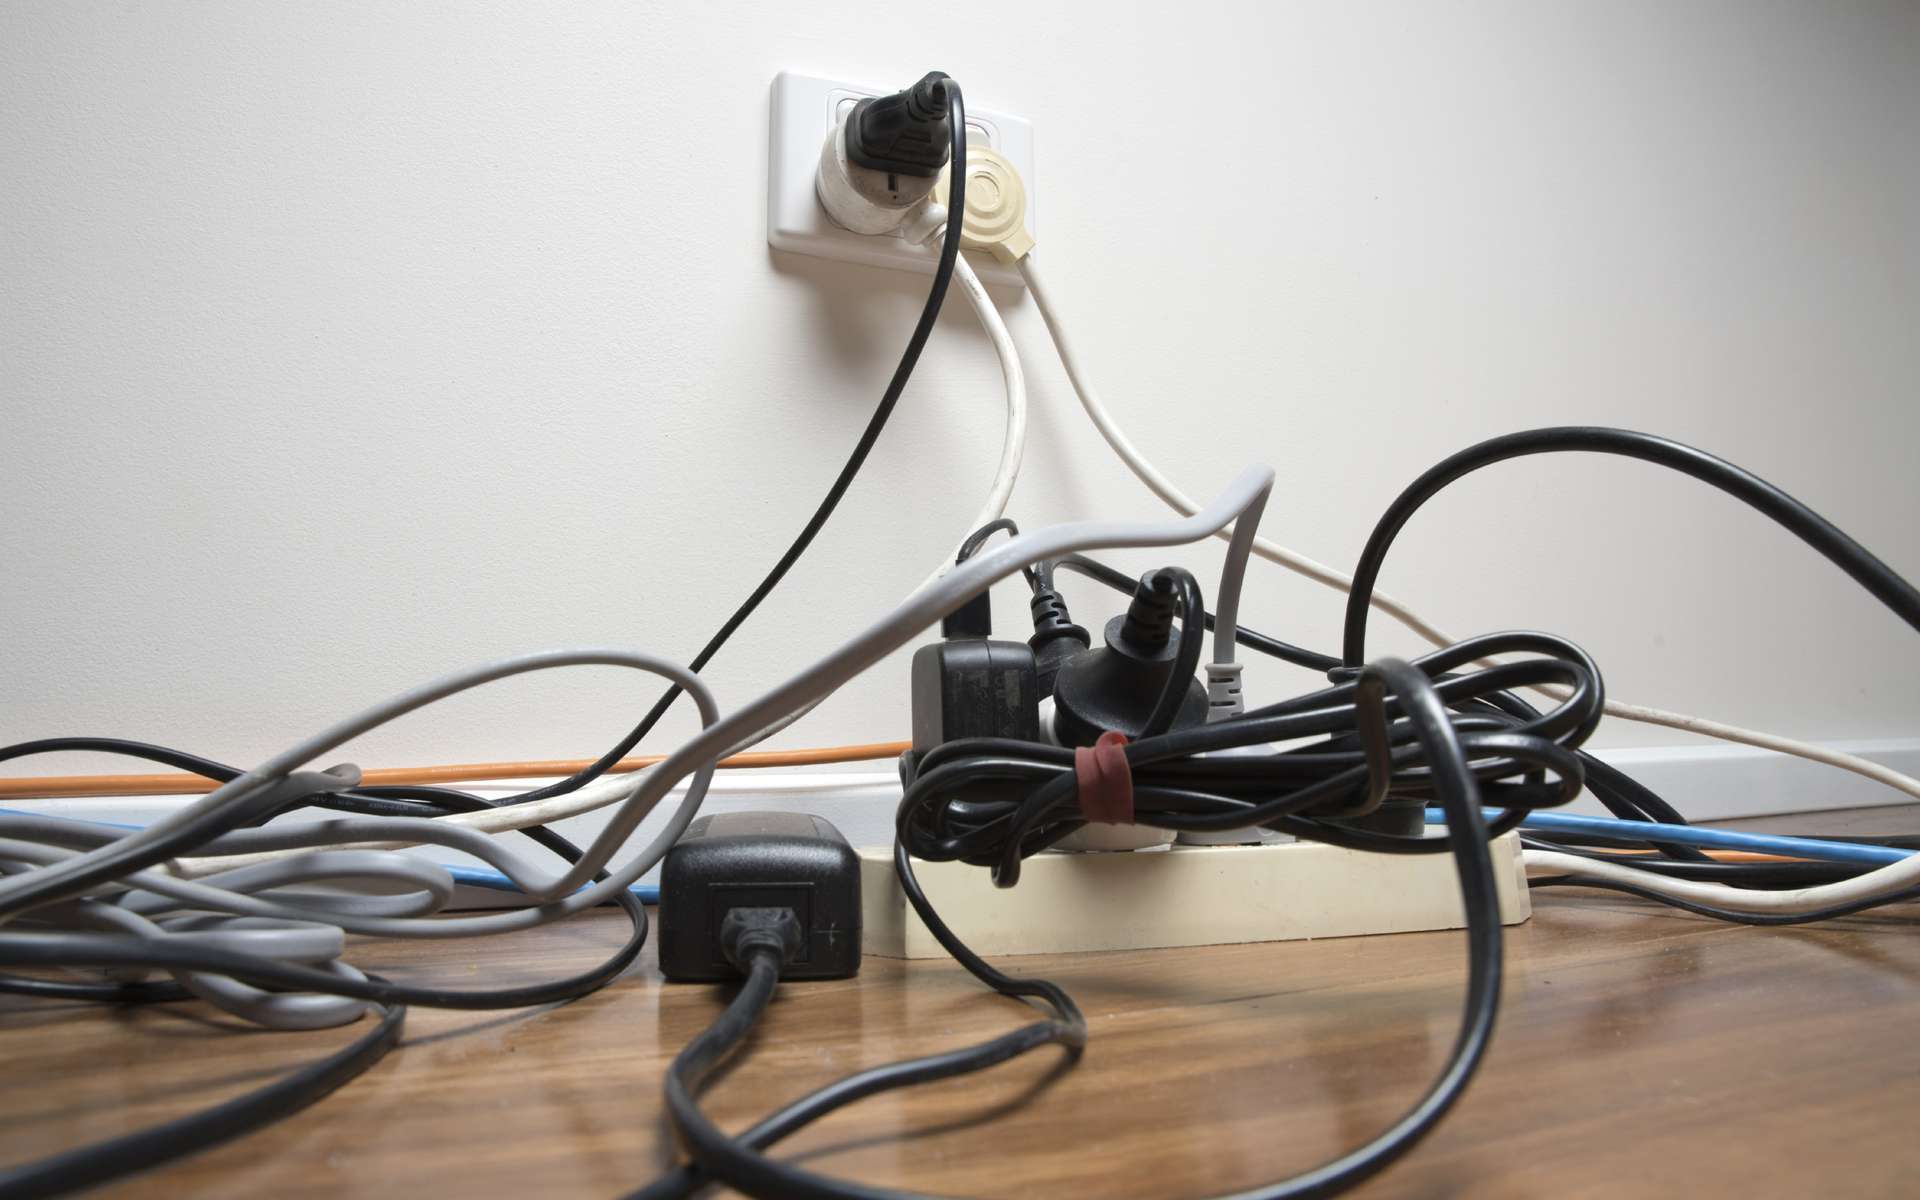 Les accidents domestiques liés aux prises électriques et autres appare